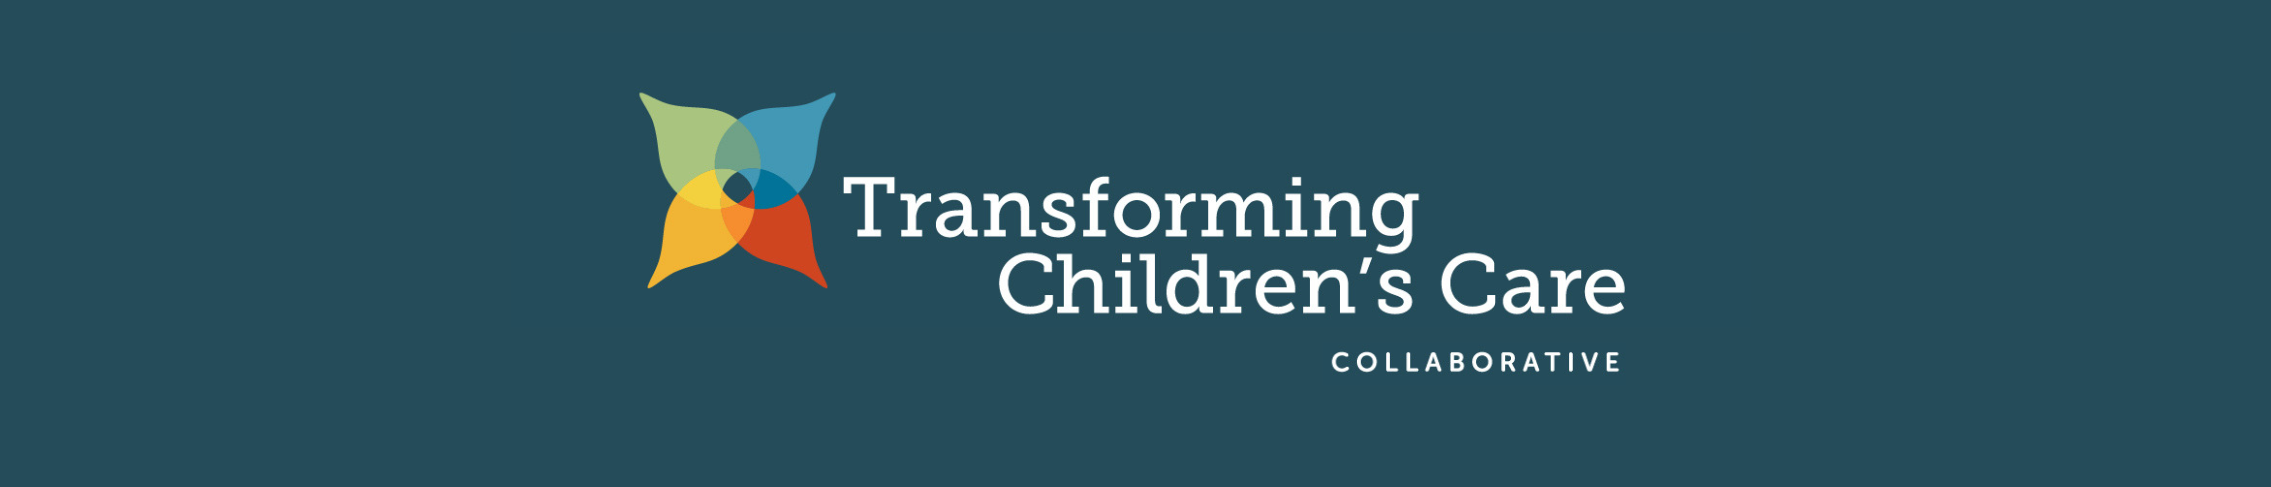 Transforming Children's Care Collaborative